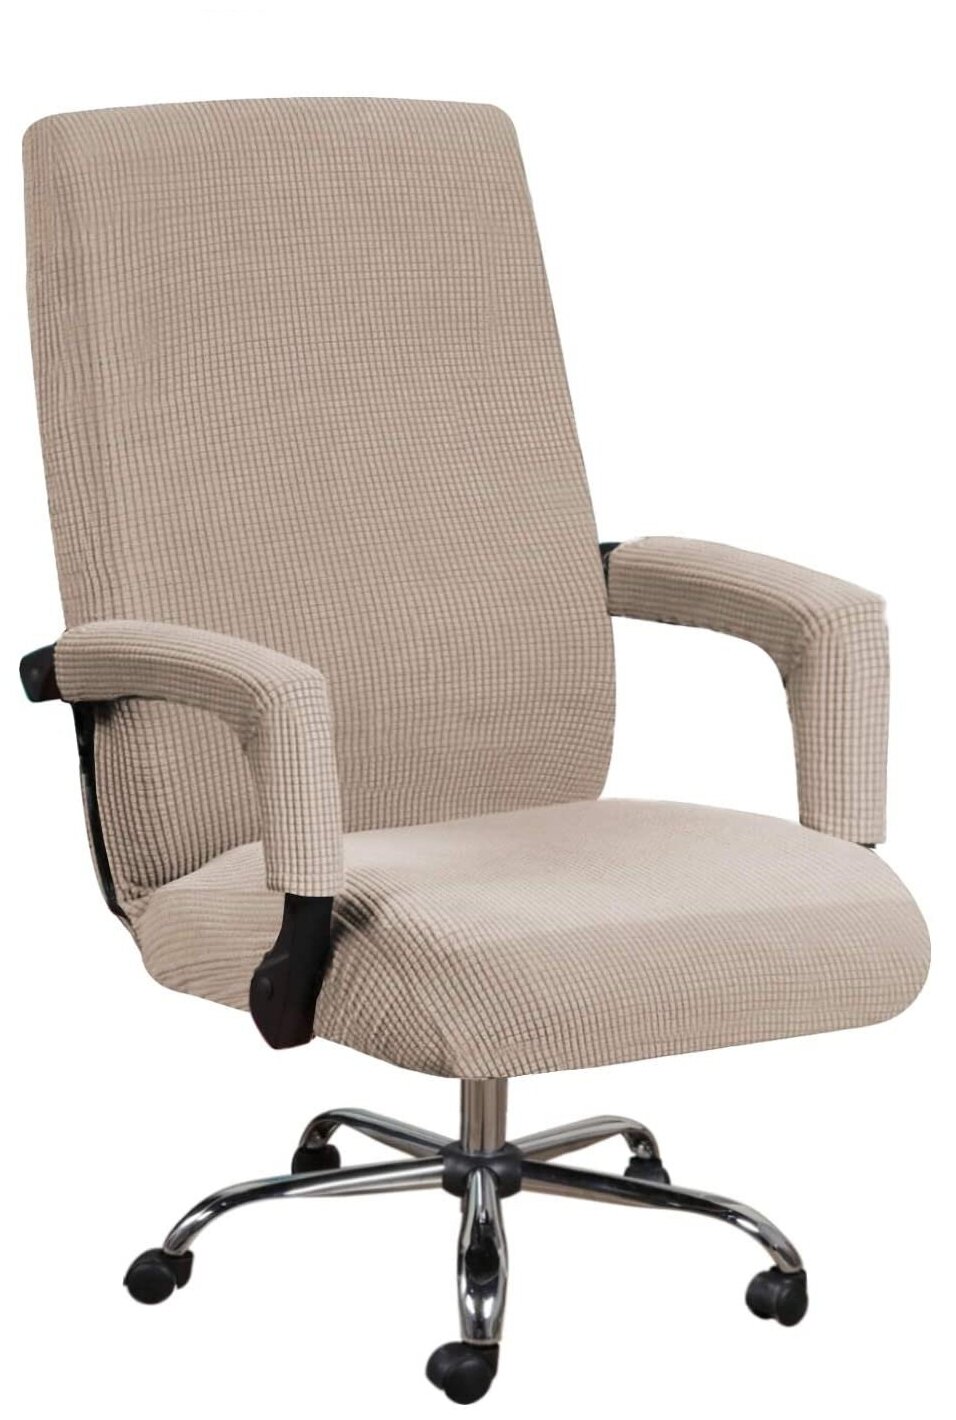 Чехол на стул, компьютерное кресло Crocus-Life B7-Beige, размер M, цвет: бежевый